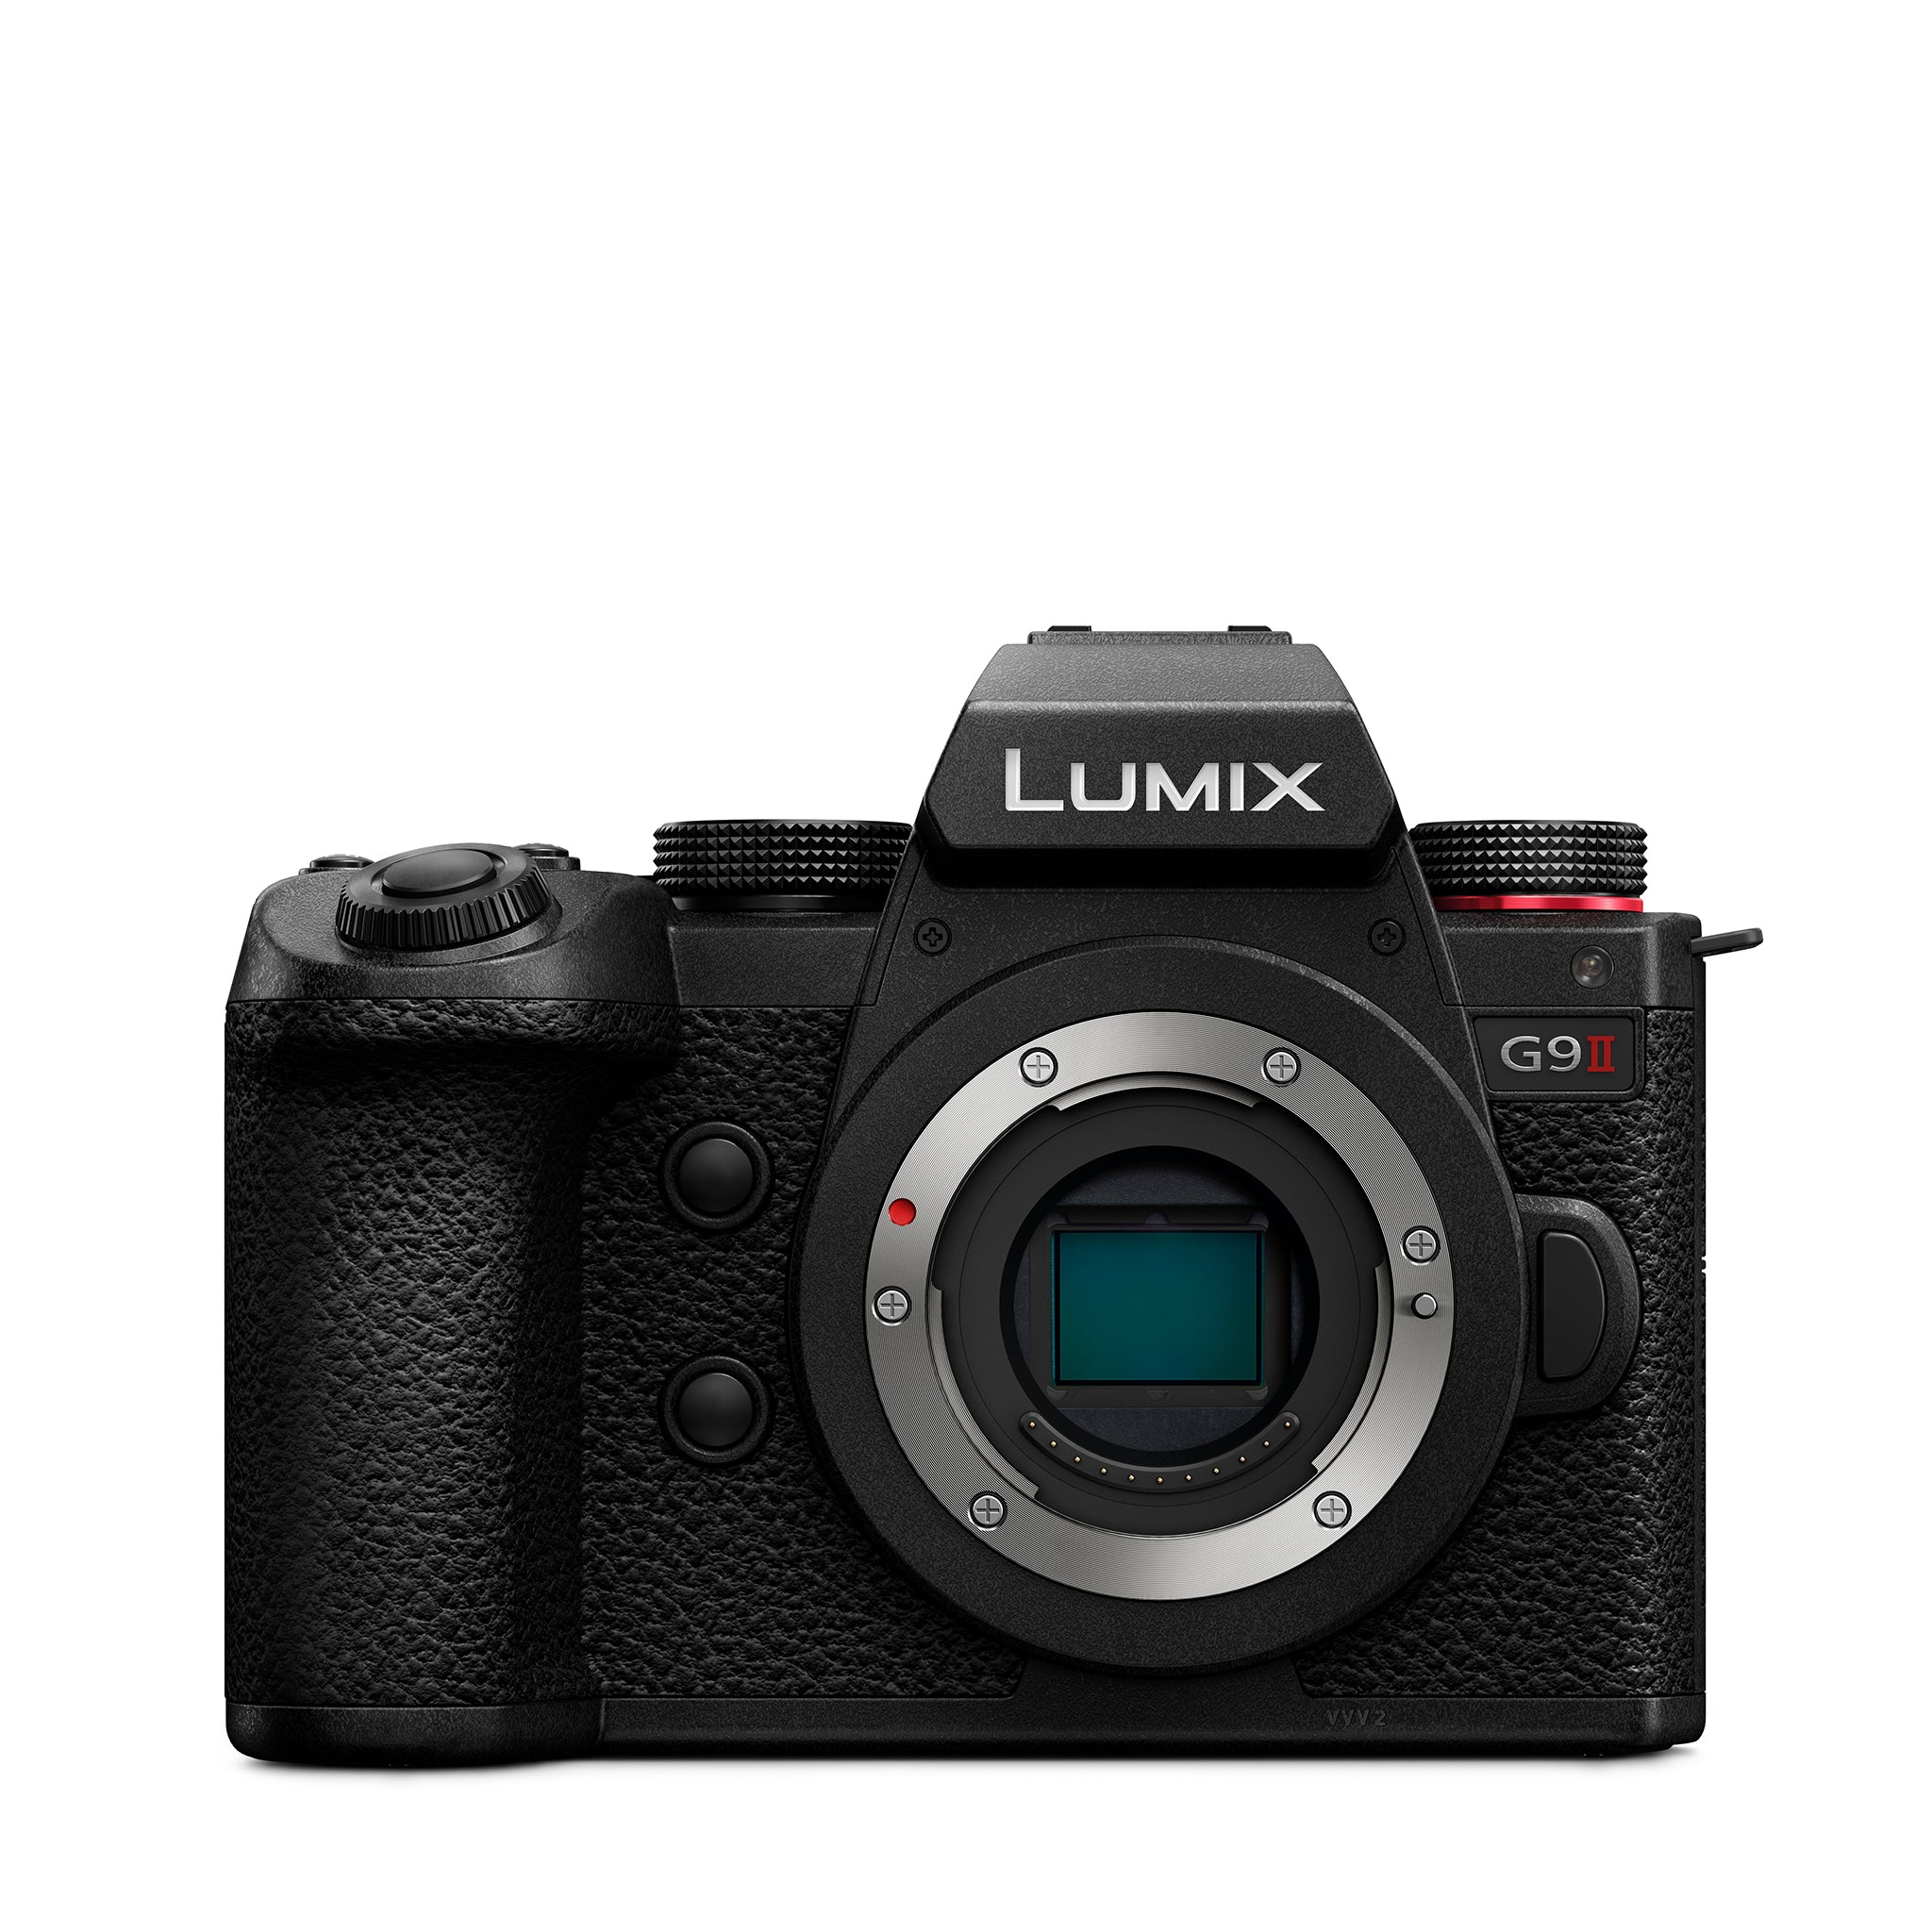 Panasonic LUMIX G9M2 Mirrorless Camera Body Only - DC-G9M2P-K